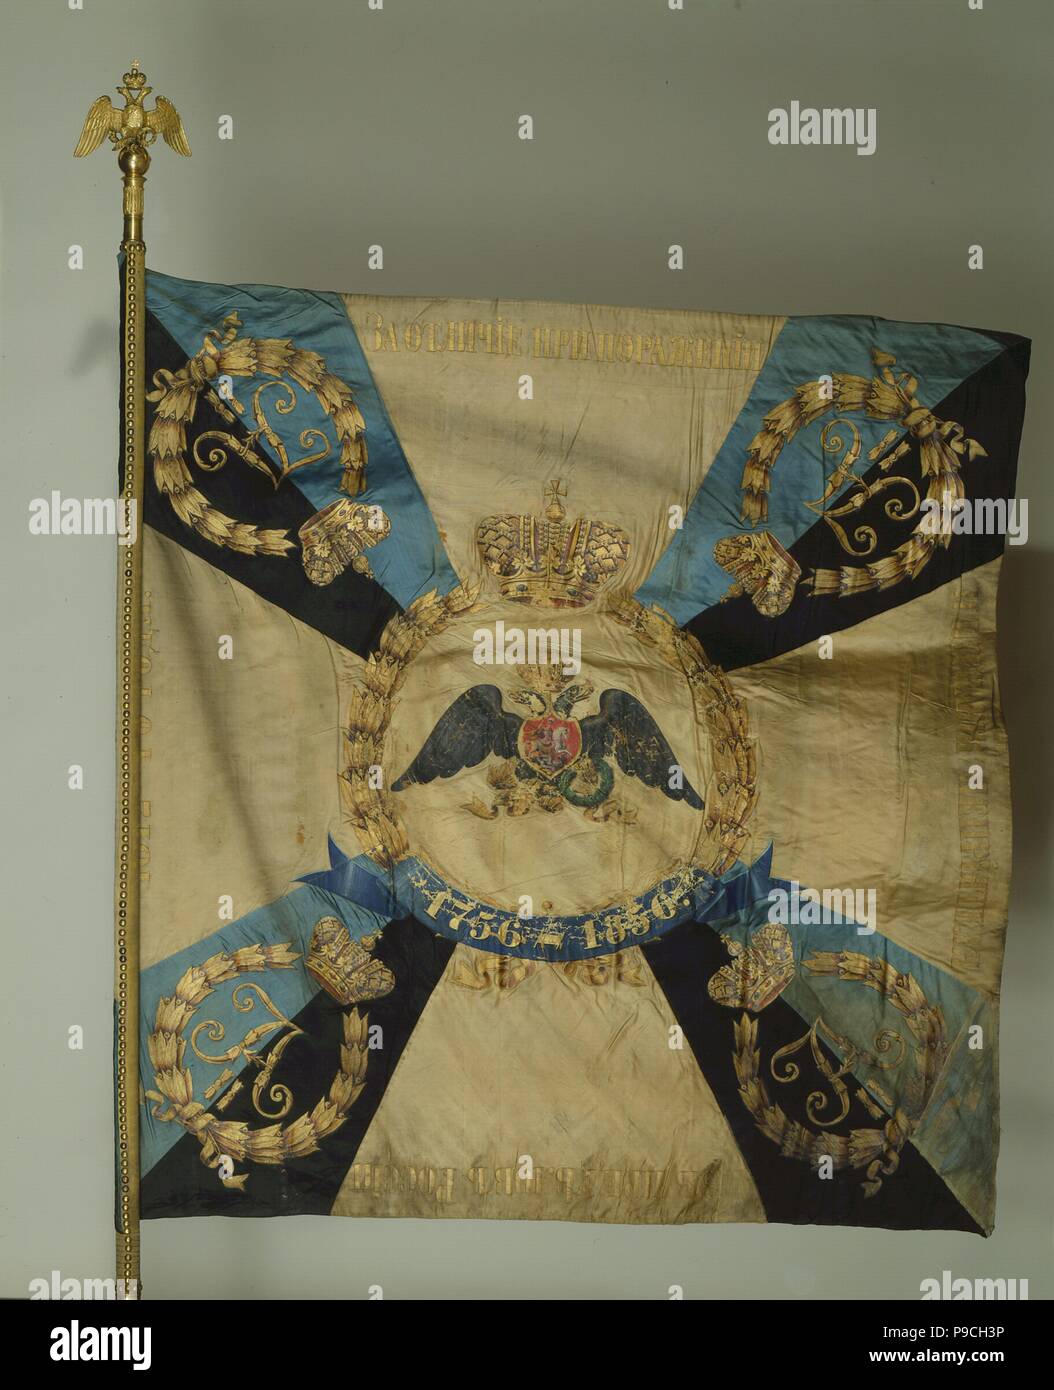 Bannière du régiment de Grenadiers Life-Guards. Musée : Etat de l'Ermitage, Saint-Pétersbourg. Banque D'Images